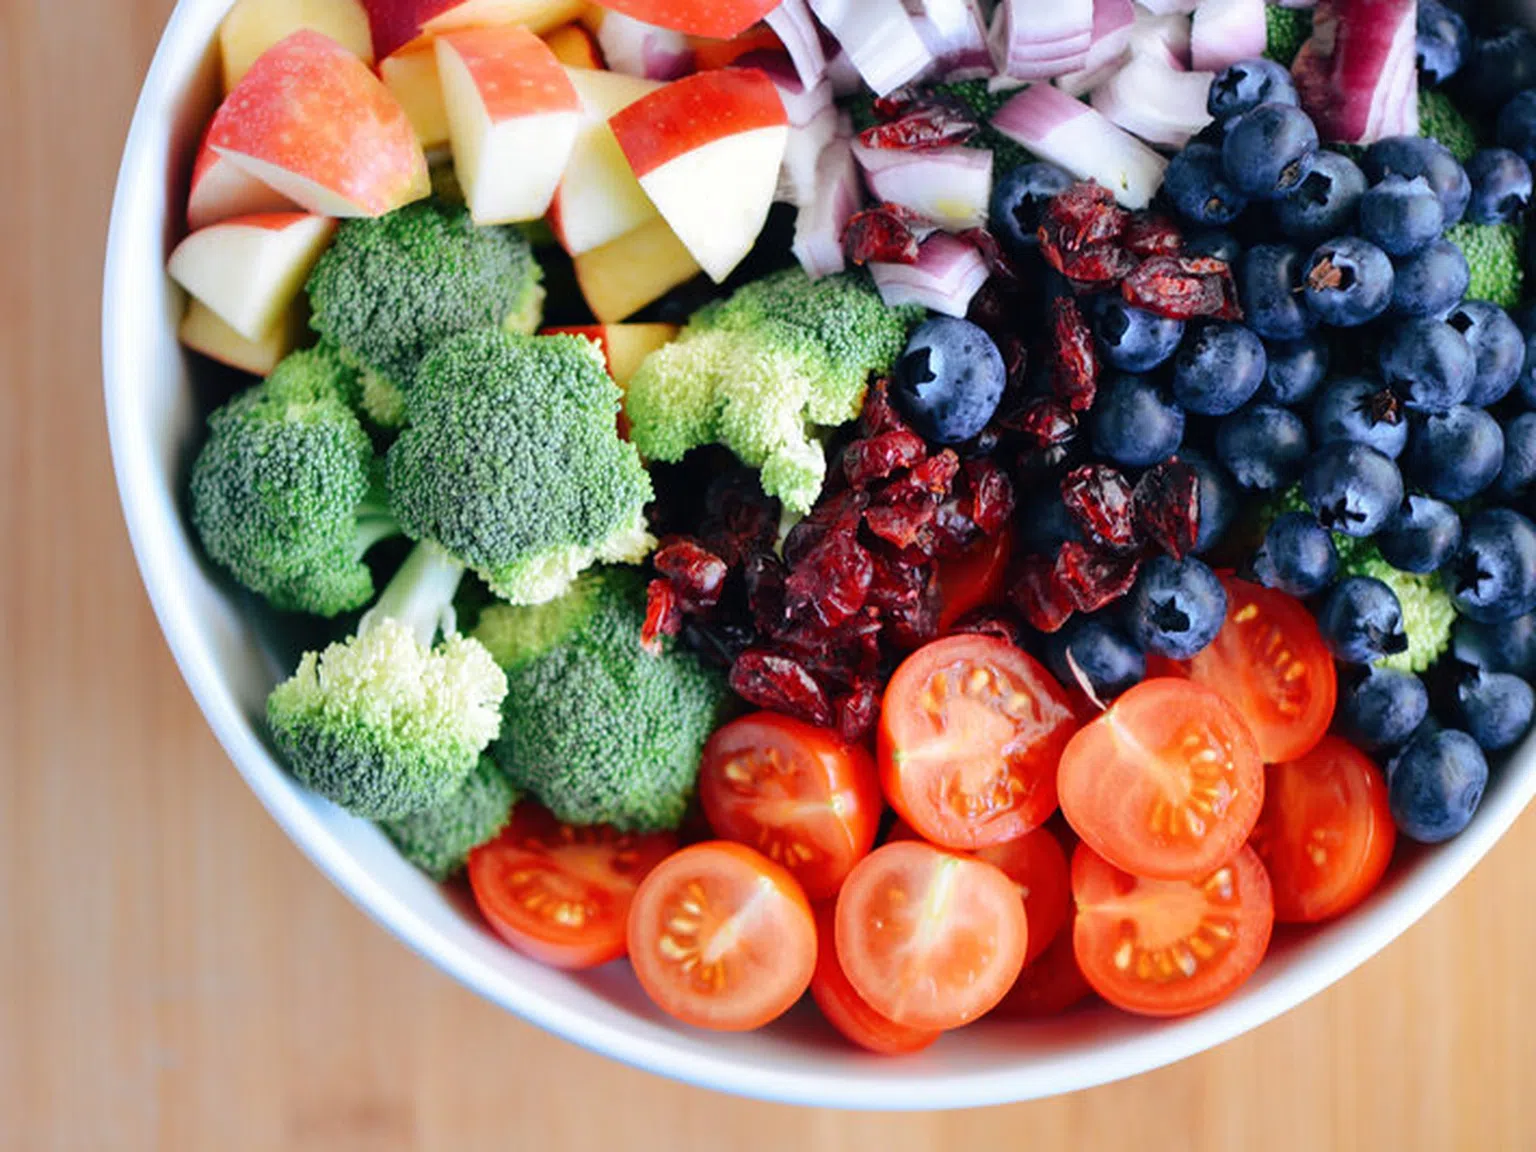 Кои зеленчуци и плодове са по-полезни - суровите или варените?